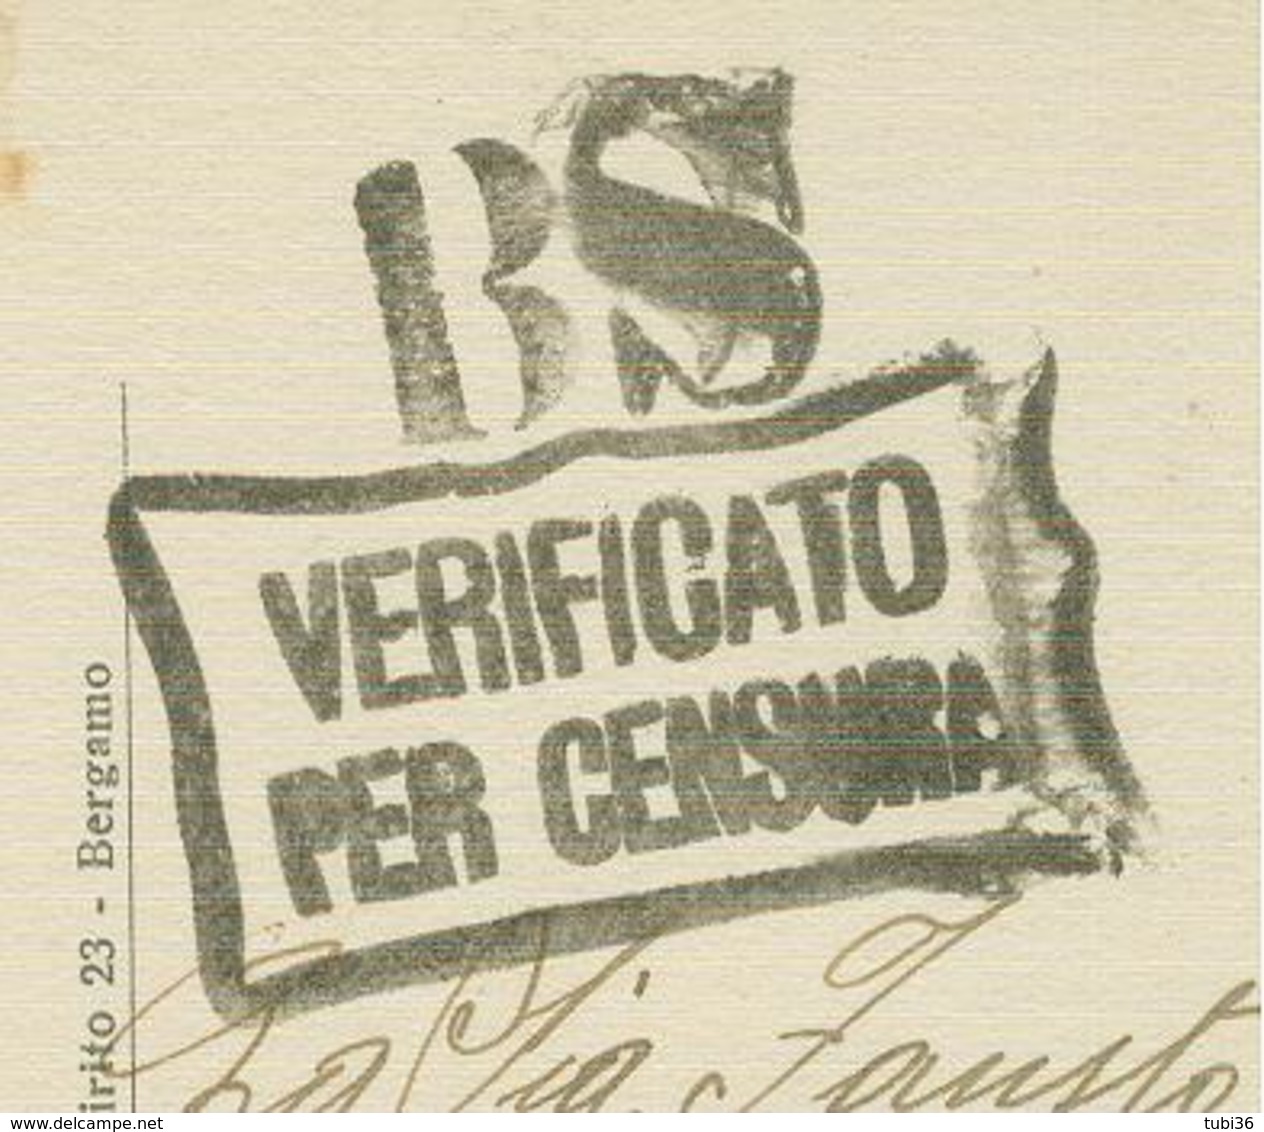 IMPERIALE Cent.10,TARIFFA FIRMA E DATA,1940,TIMBRO POSTE BRENO(BRESCIA),"BS-VERIFICATO PER CENSURA",BRENO VILLA GHEZA,RR - Storia Postale